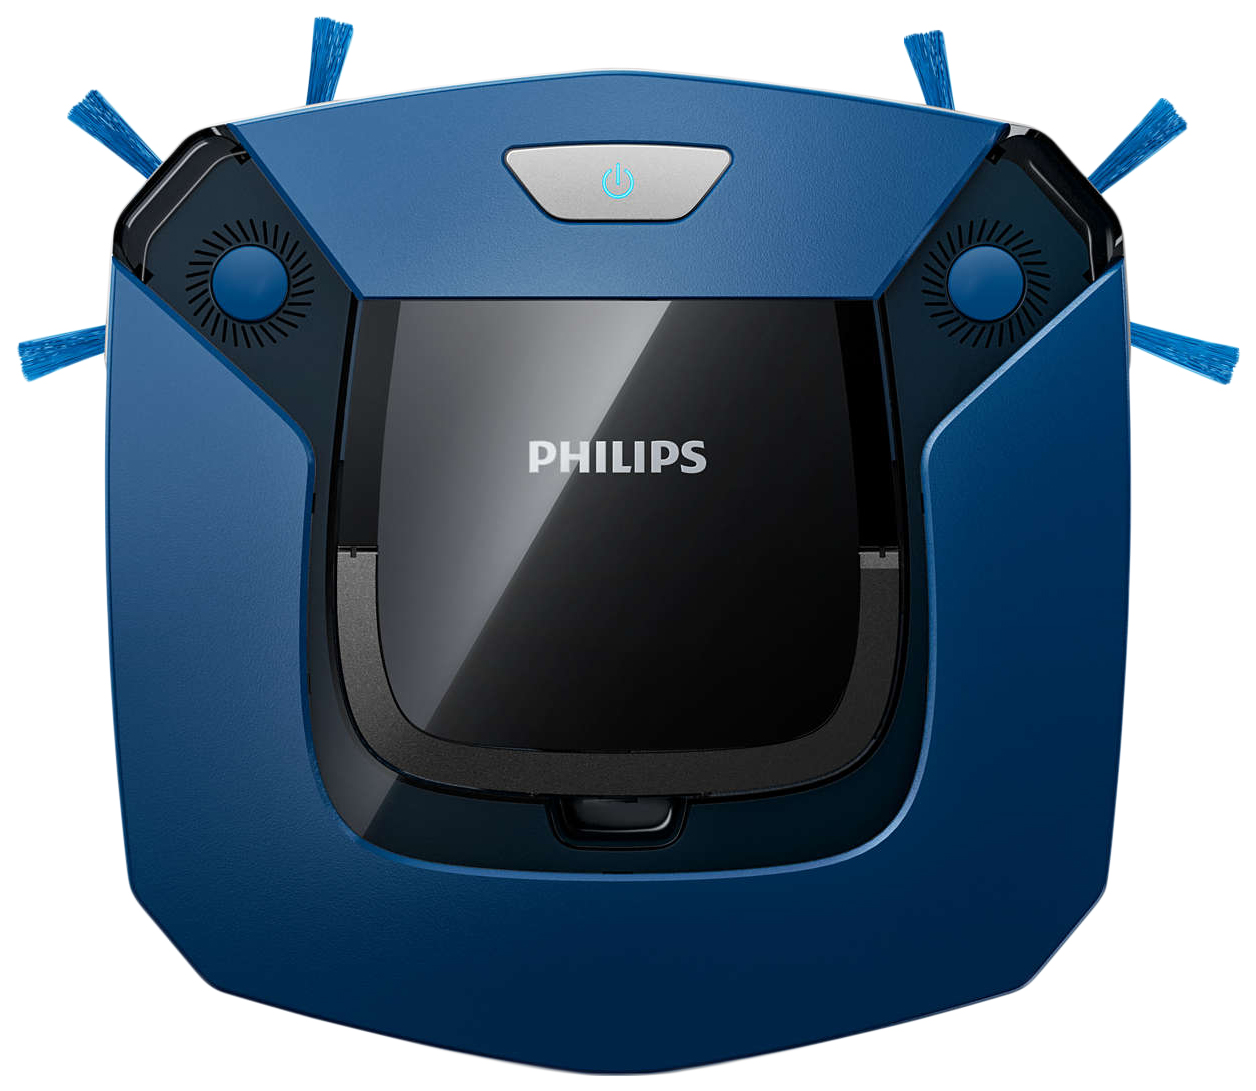 Пылесосы Philips: беспроводные модели с контейнером, роботы-пылесосы и моющие аппараты, советы по ремонту - официальный сайт Philips